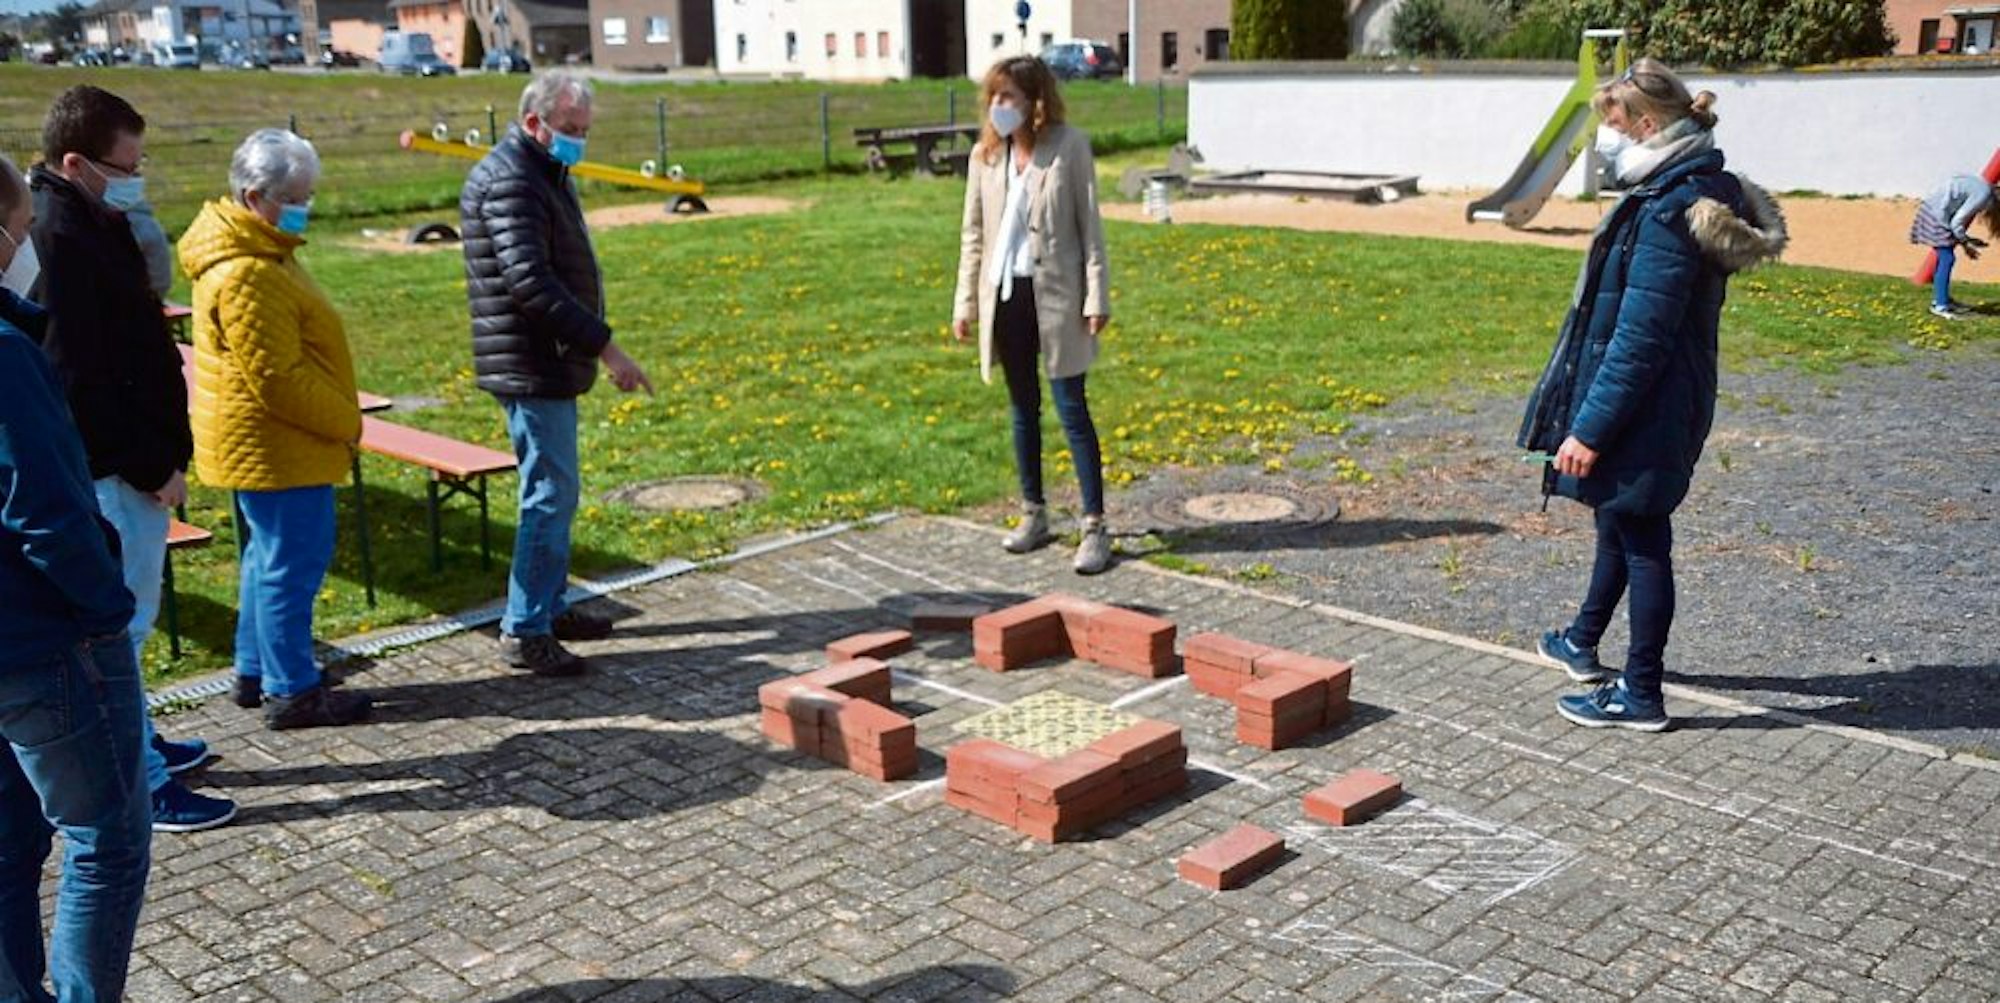 Anhand eines Modells aus Ziegelsteinen und eines Bebauungsplanentwurfes konnten sich die Besucher der Bürgerbefragung ein erstes Bild des Neubaugebietes machen.